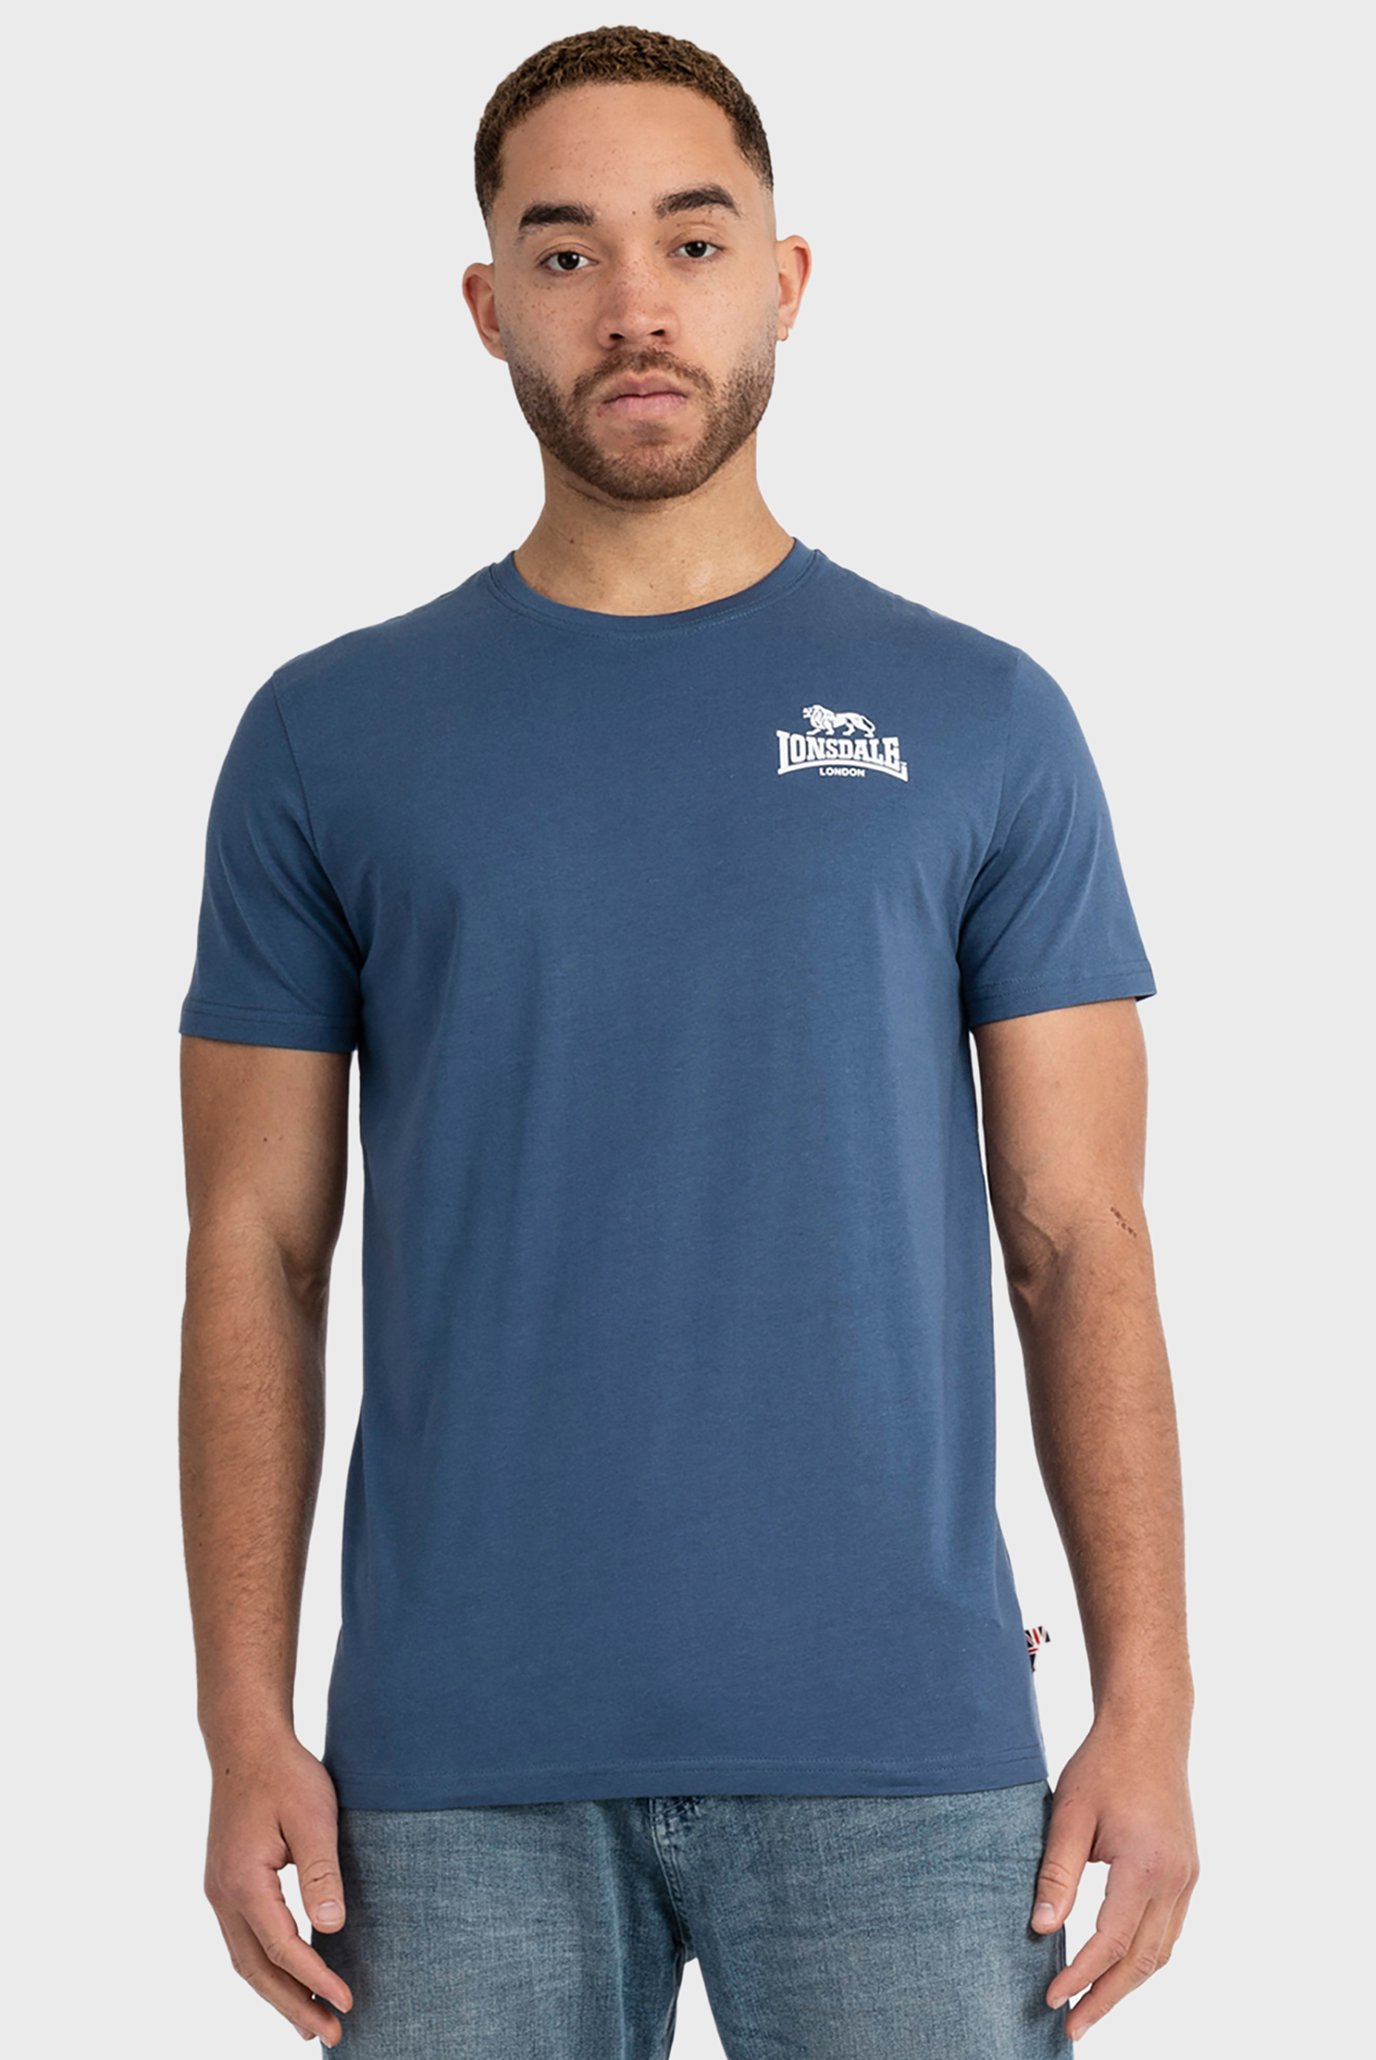 Мужская синяя футболка 1